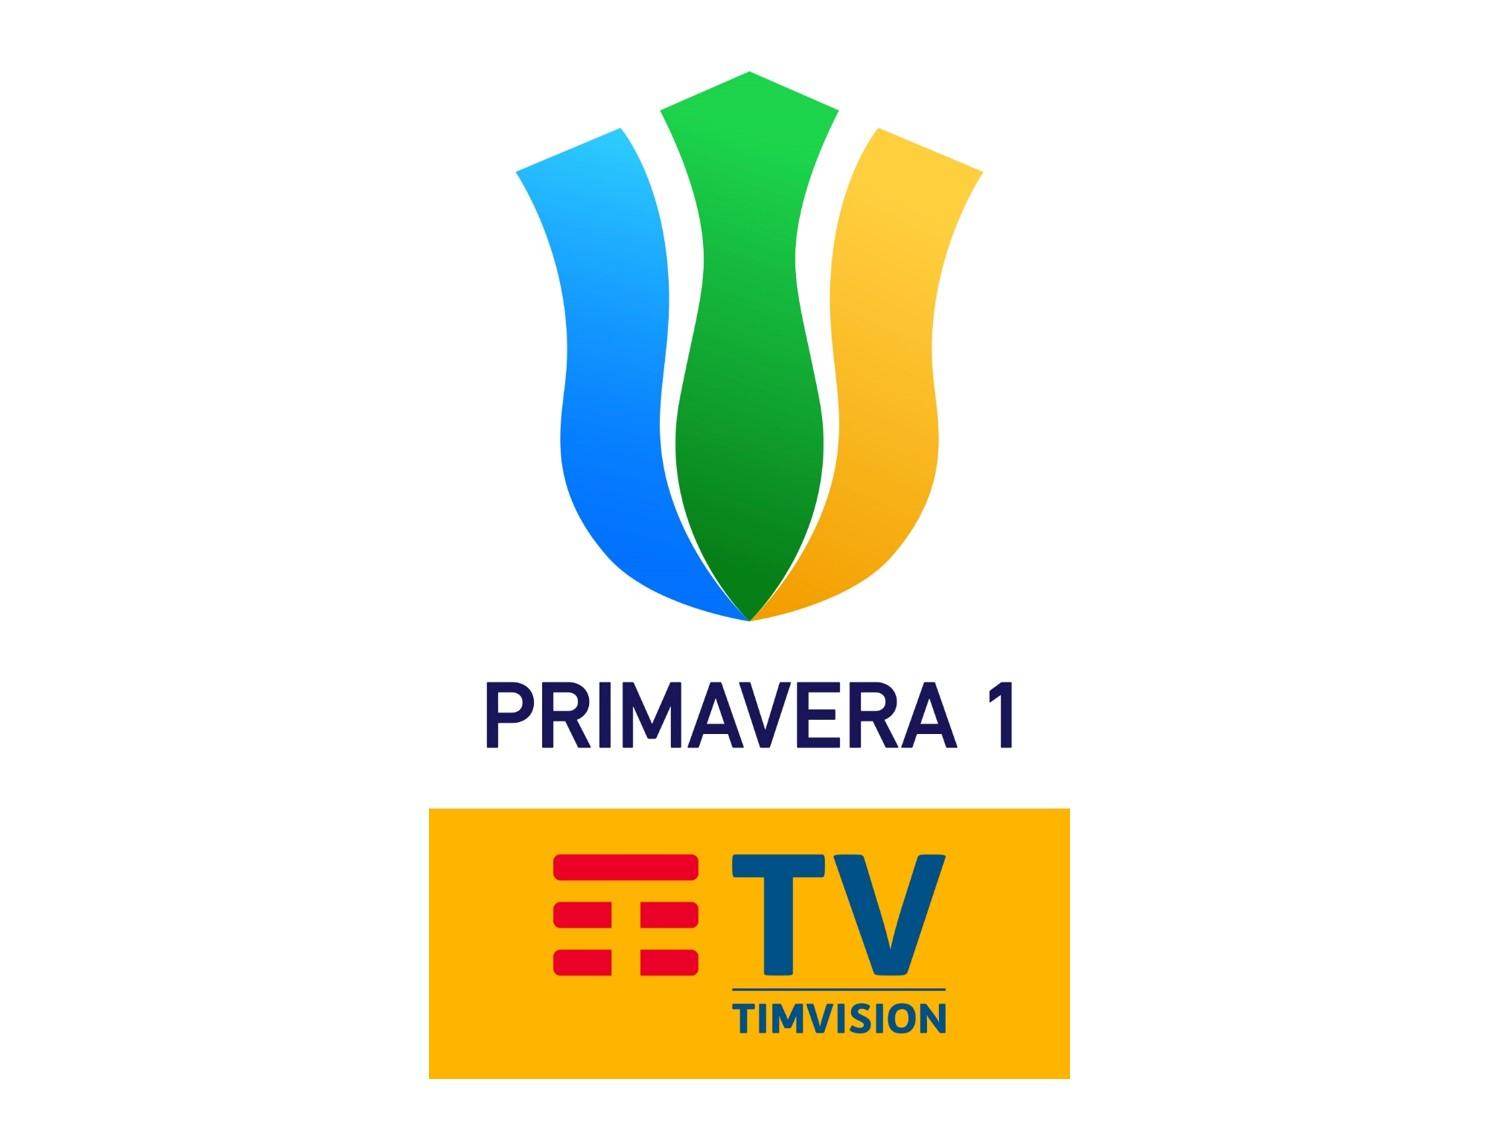 Scatta su Sportitalia il Campionato Primavera 1 TimVision - Programma e Telecronisti